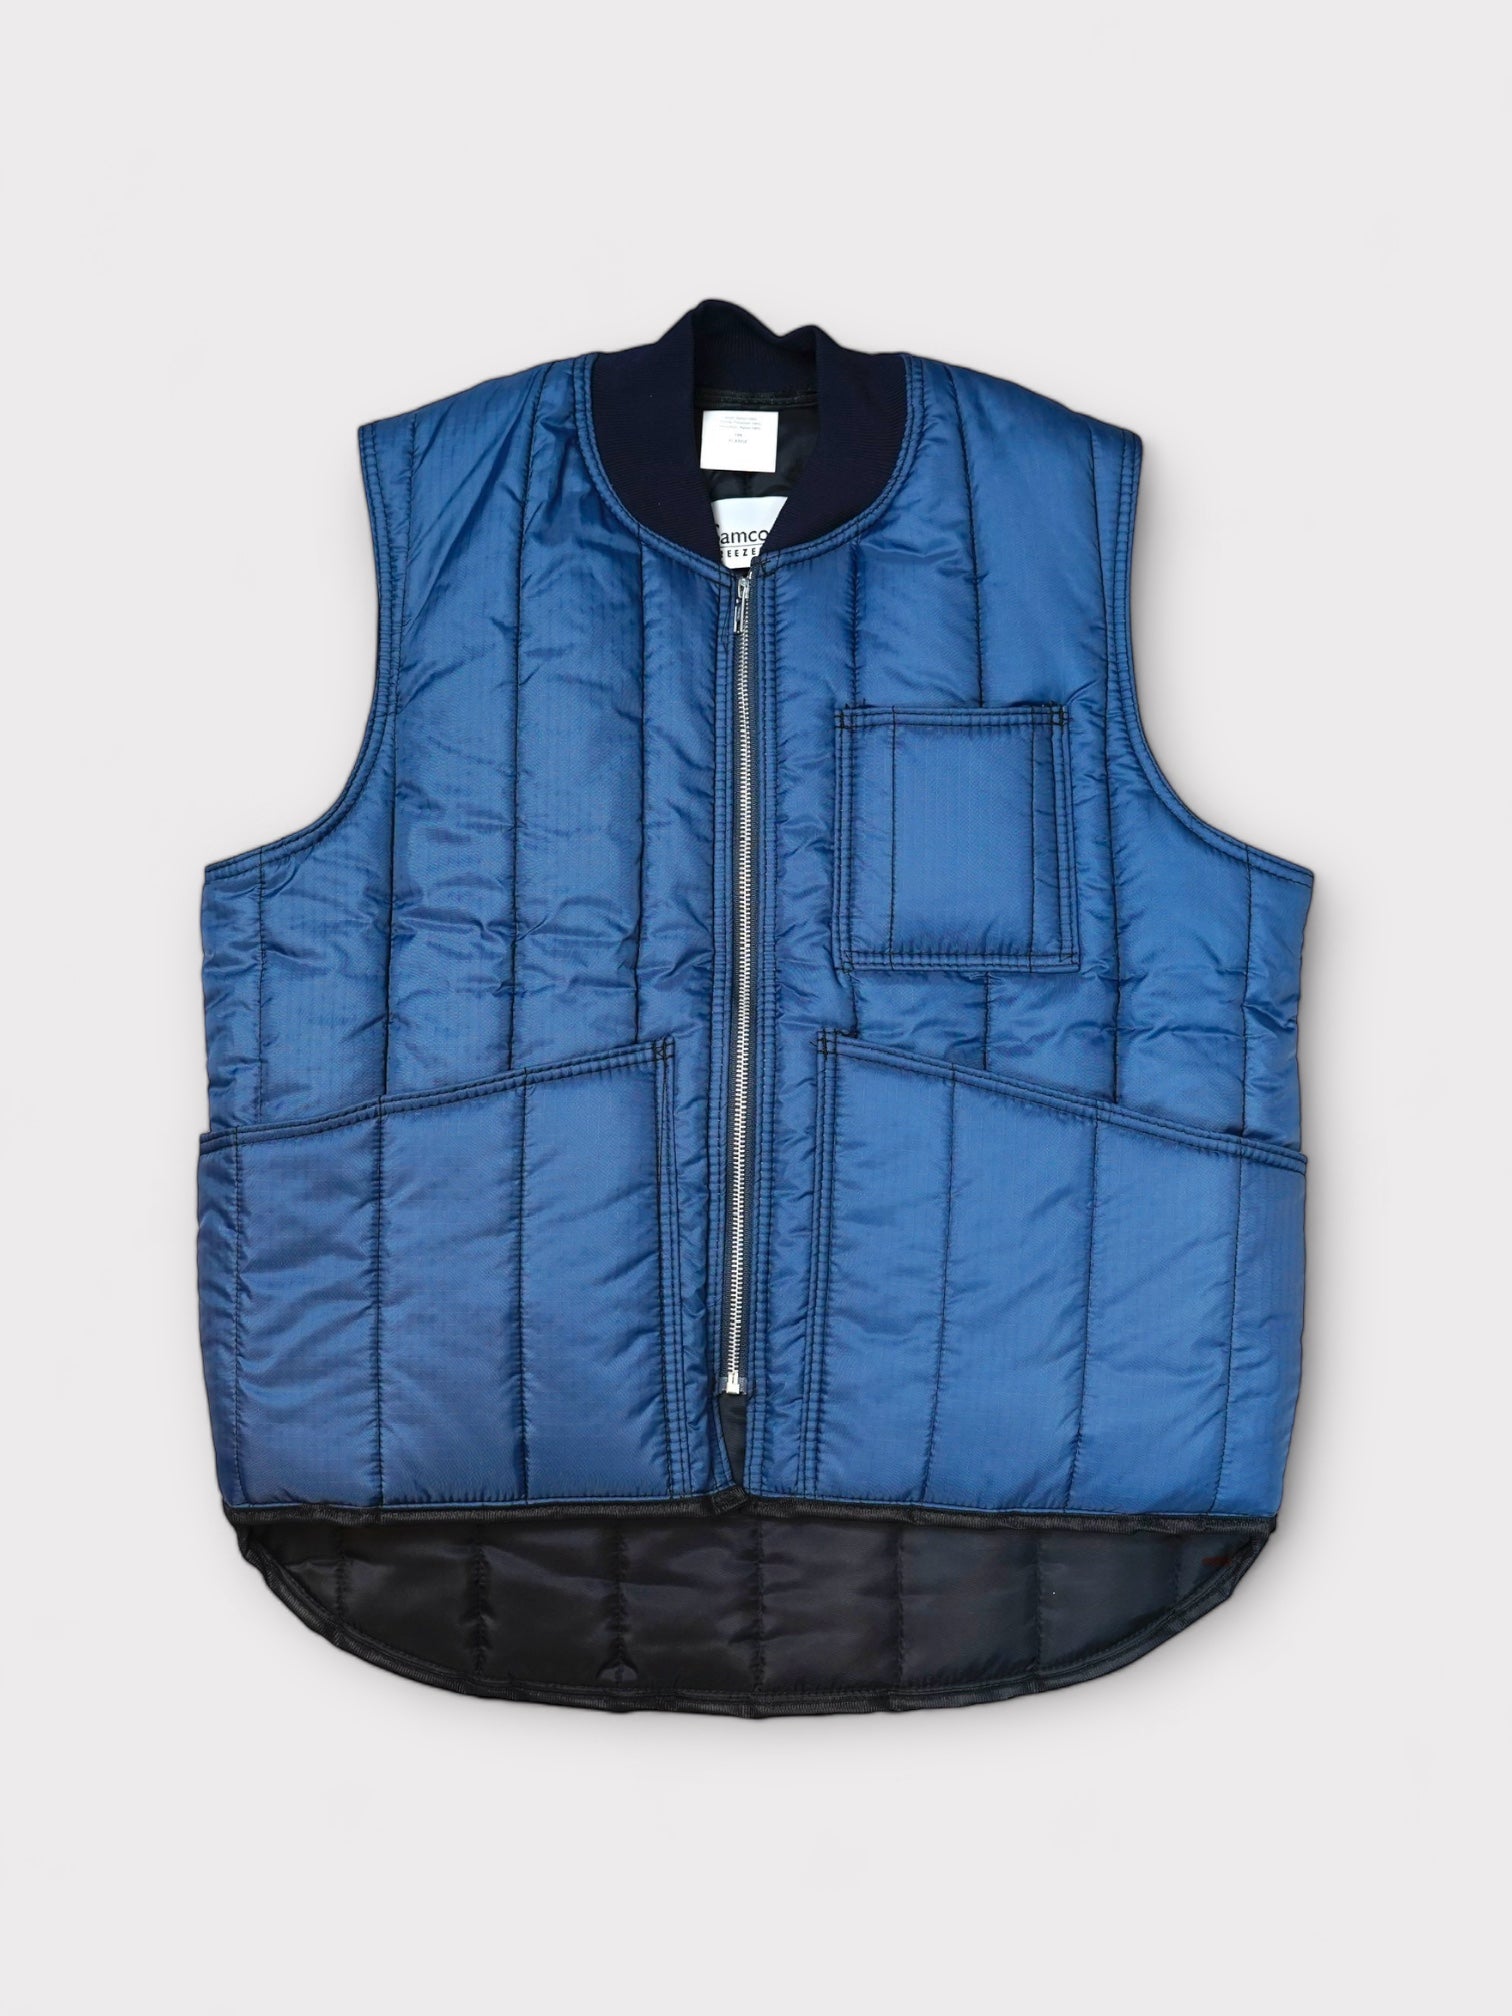 SAMCO FREEZERWEAR Lightweight vest made in USA 